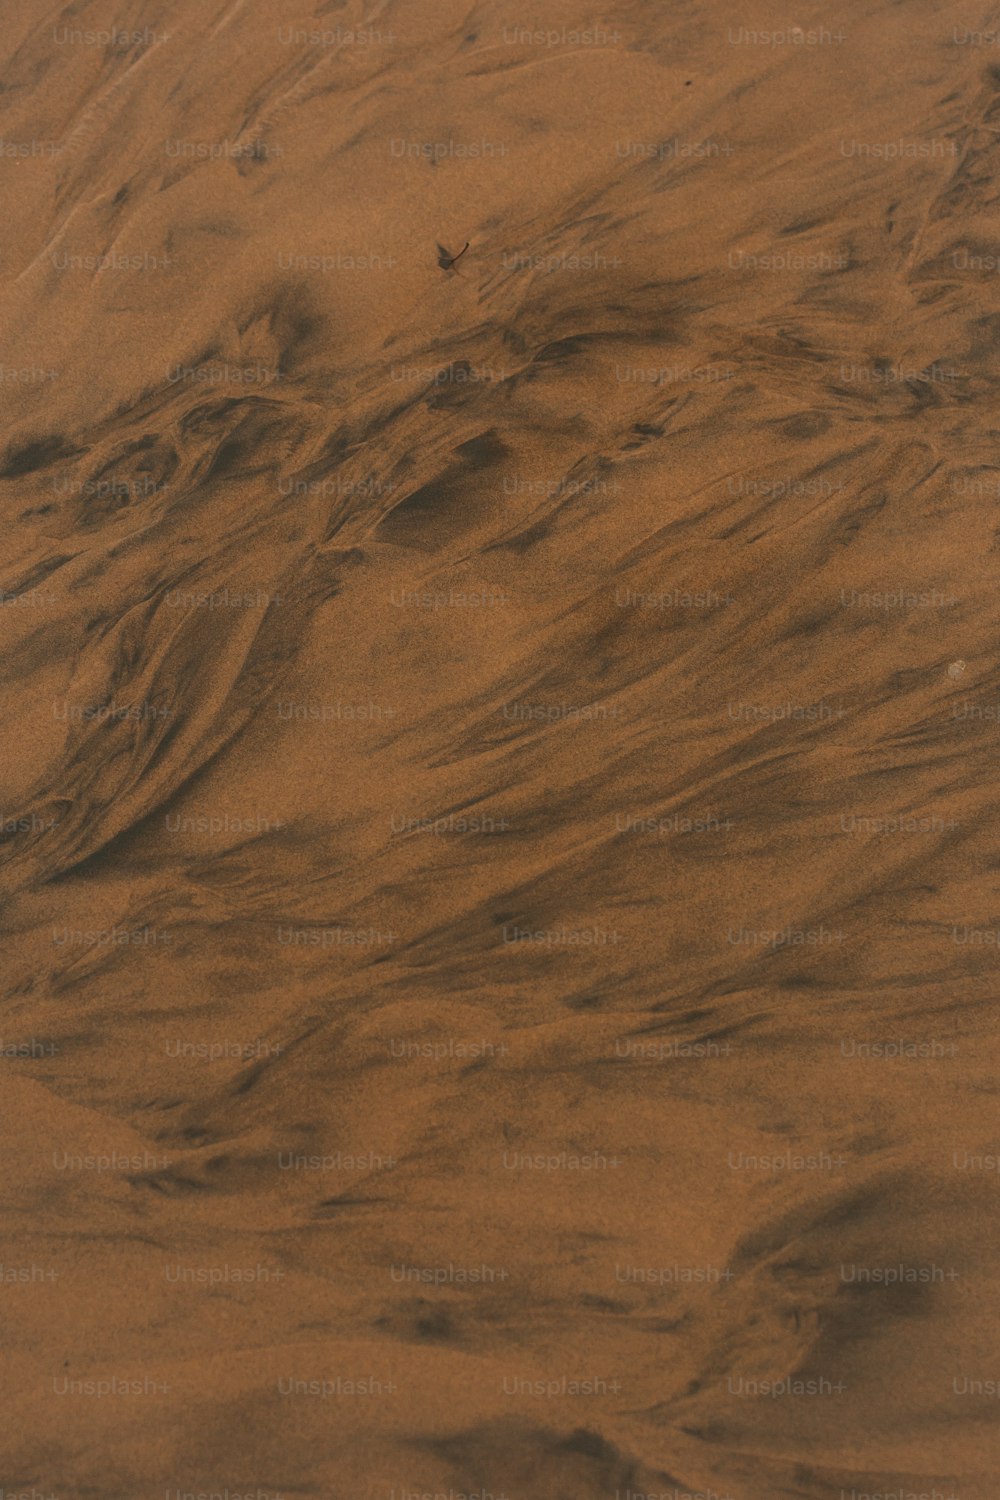 Ein Vogel fliegt über einen sandbedeckten Sandstrand